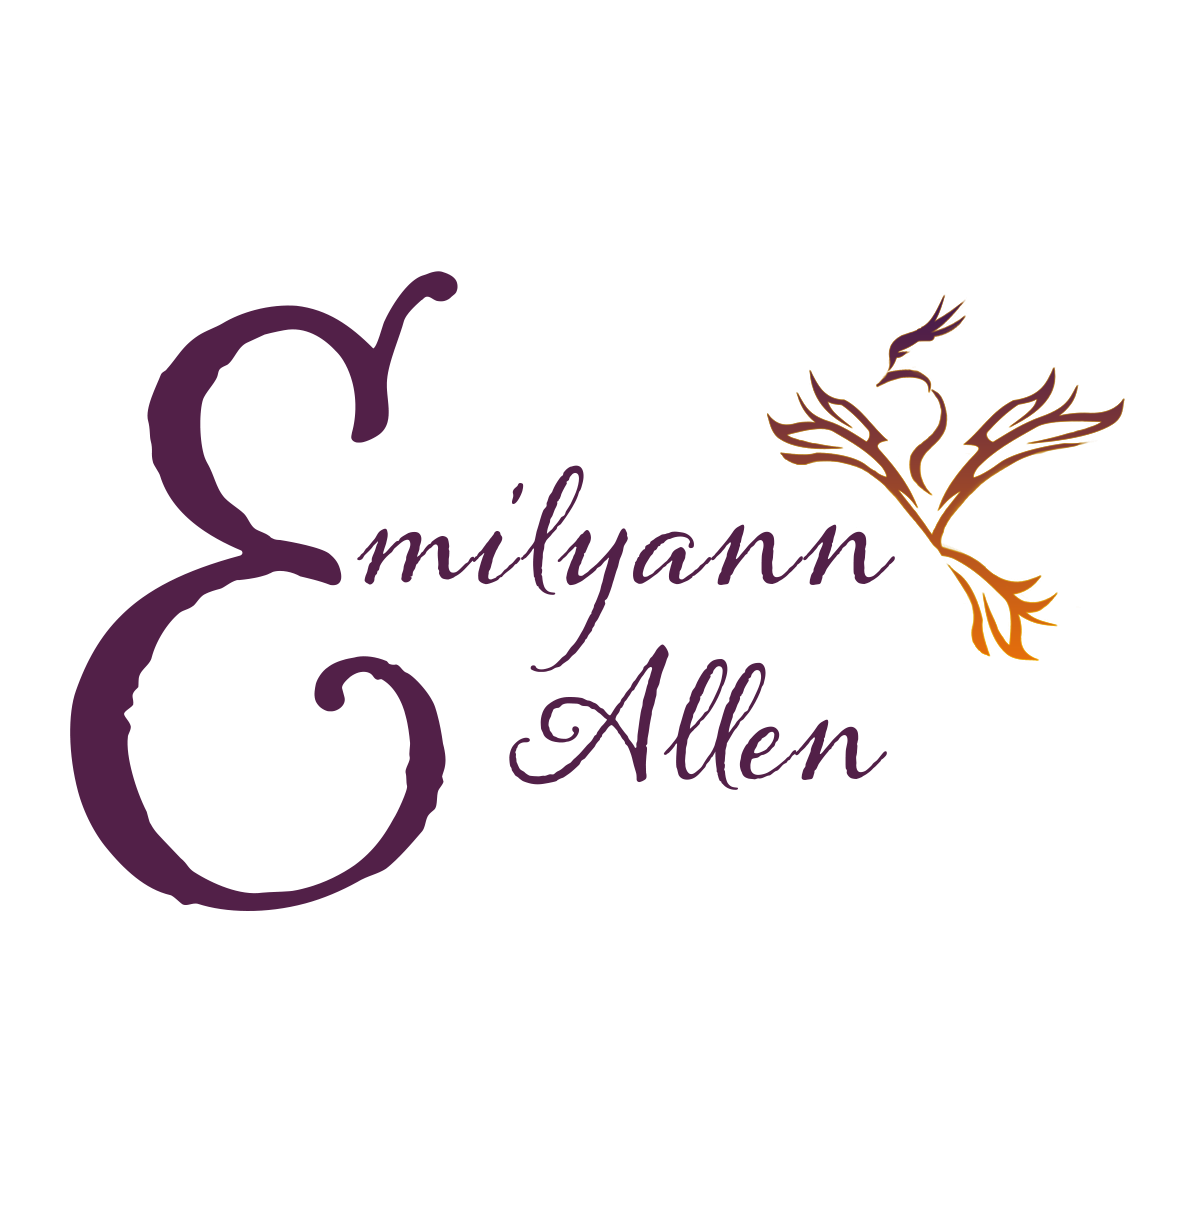 Emilyann Allen / Bestselling Author and Designer